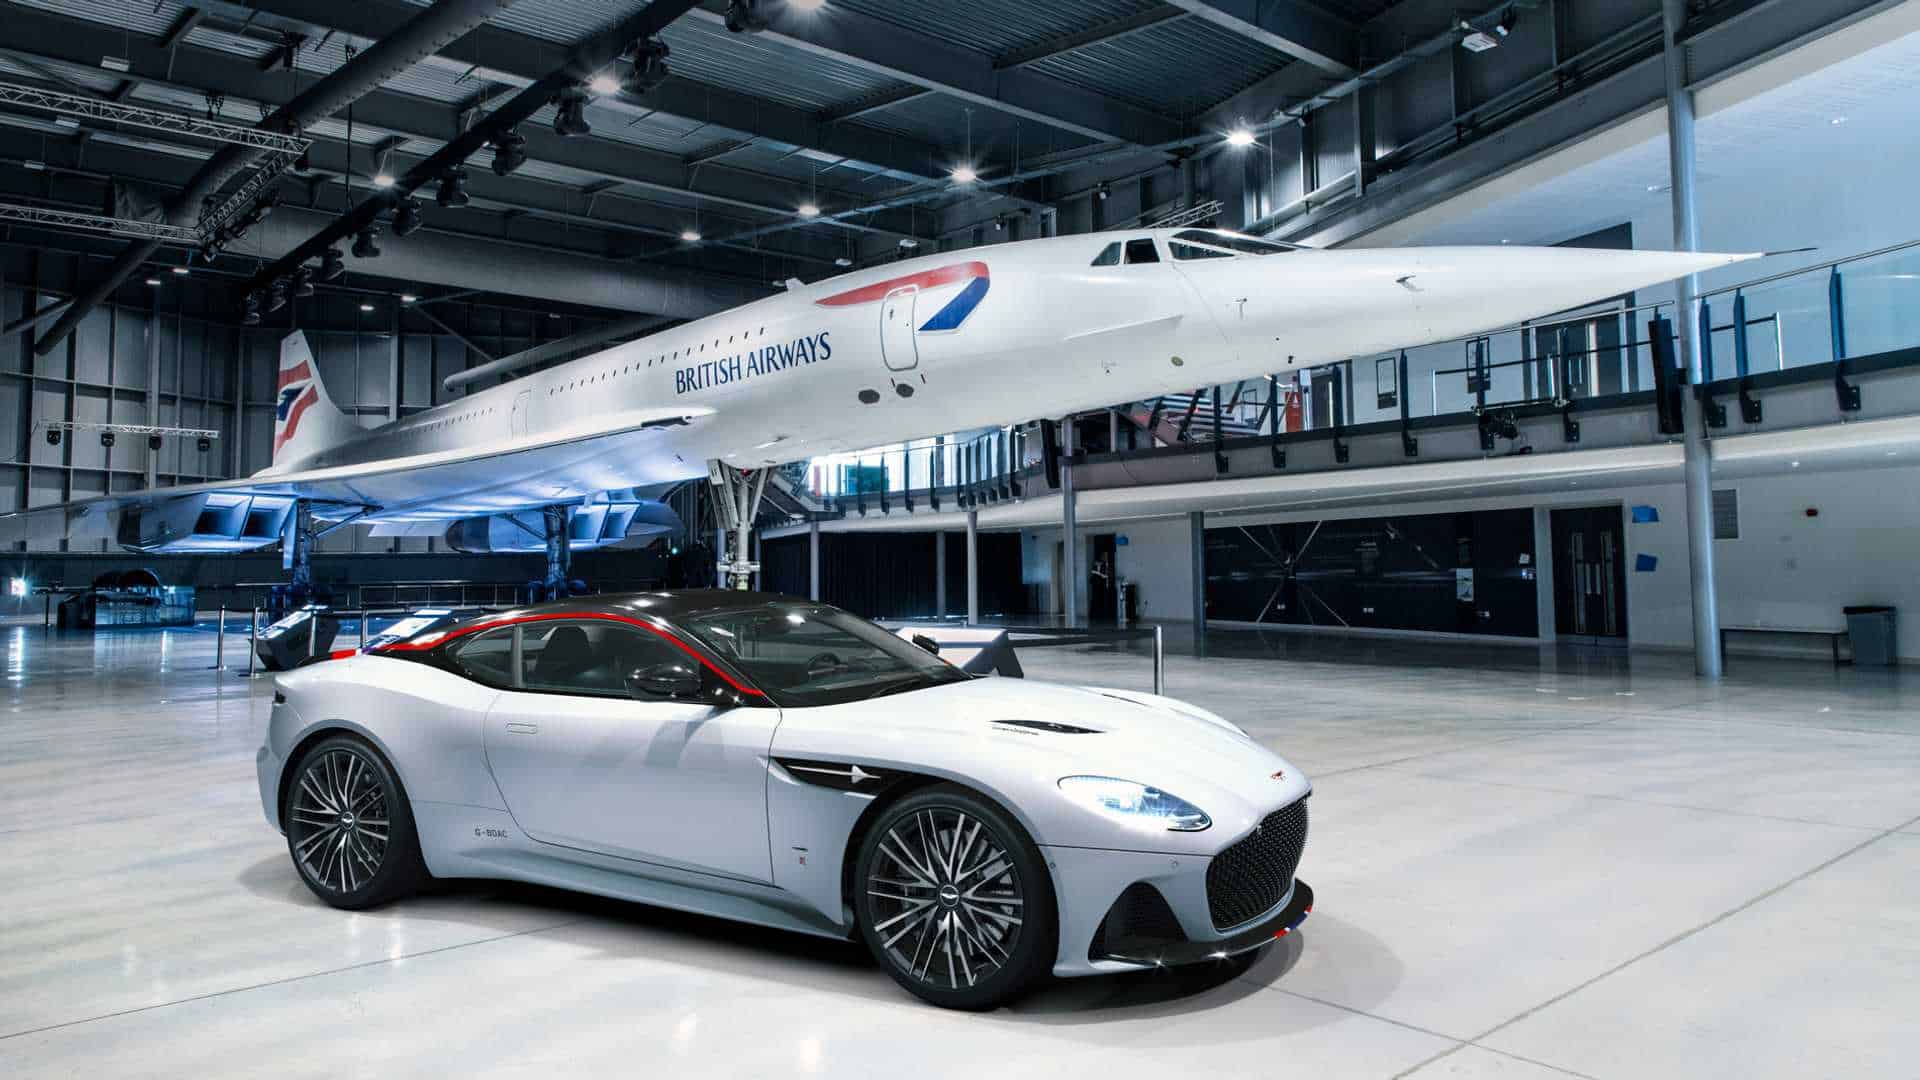 Aston Martin DBS Superleggera Concorde Edition Reaches for the Sky